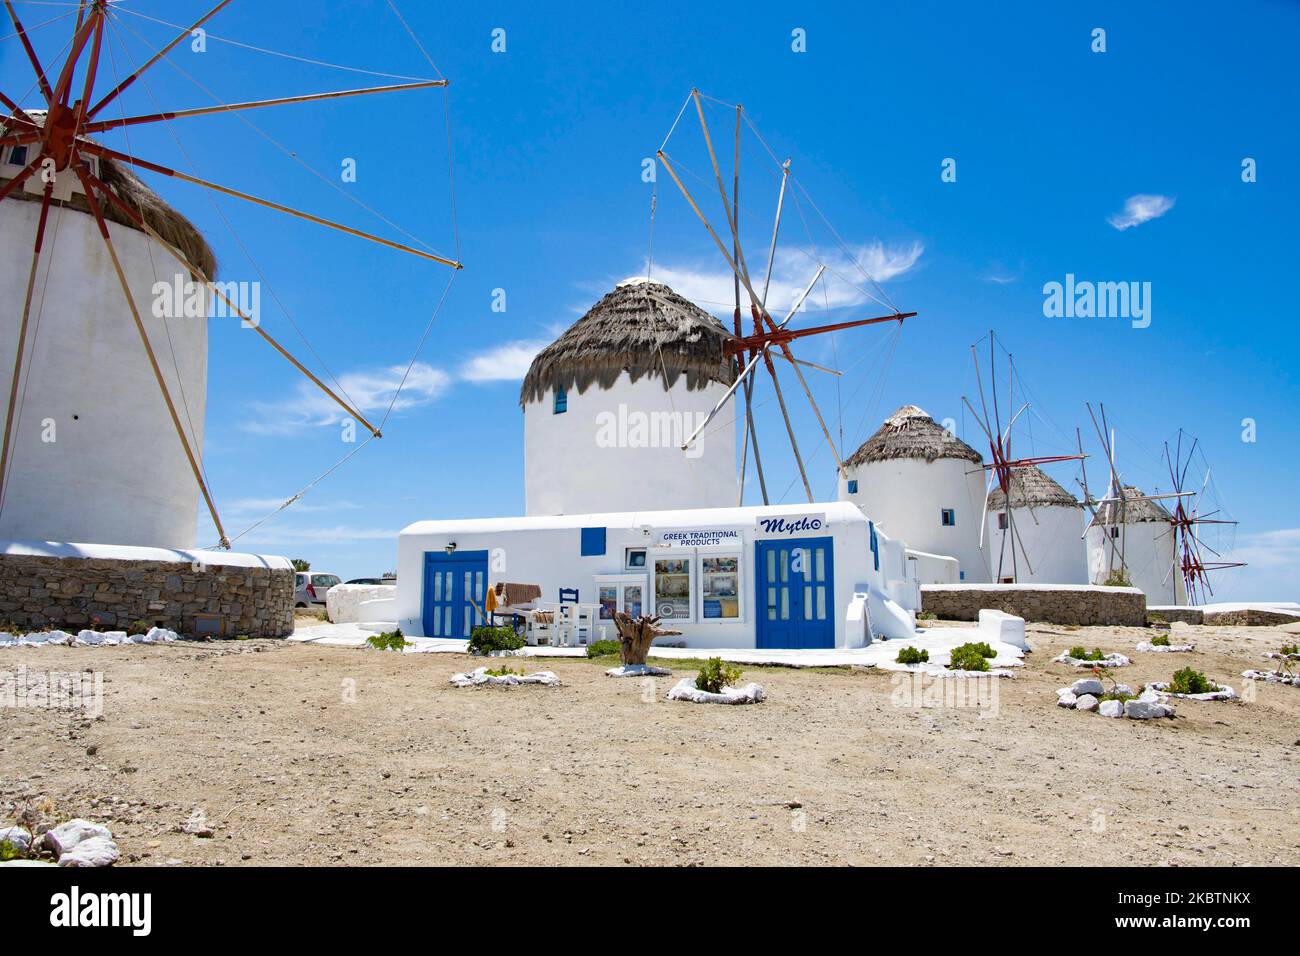 Les moulins à vent emblématiques de l'île de Mykonos, les îles Cyclades, la mer Egée, la Grèce sur 14 juillet 2020. Il n'y a presque personne dans les moulins à vent en raison des mesures pandémiques du coronavirus et de l'interdiction de la circulation que la Grèce a appliquées. Il y a 16 moulins à vent sur l'île, dont 5 au-dessus de Chora ou Mykonos, la ville principale de l'île. Les moulins à vent ont été construits au 16th siècle à partir des Vénitiens mais leurs constructions se sont poursuivies jusqu'au 20th siècle. La célèbre île grecque méditerranéenne est surnommée l'île des vents avec des bâtiments traditionnels blanchis à la chaux comme des moulins à vent ou une petite église. Mykon Banque D'Images